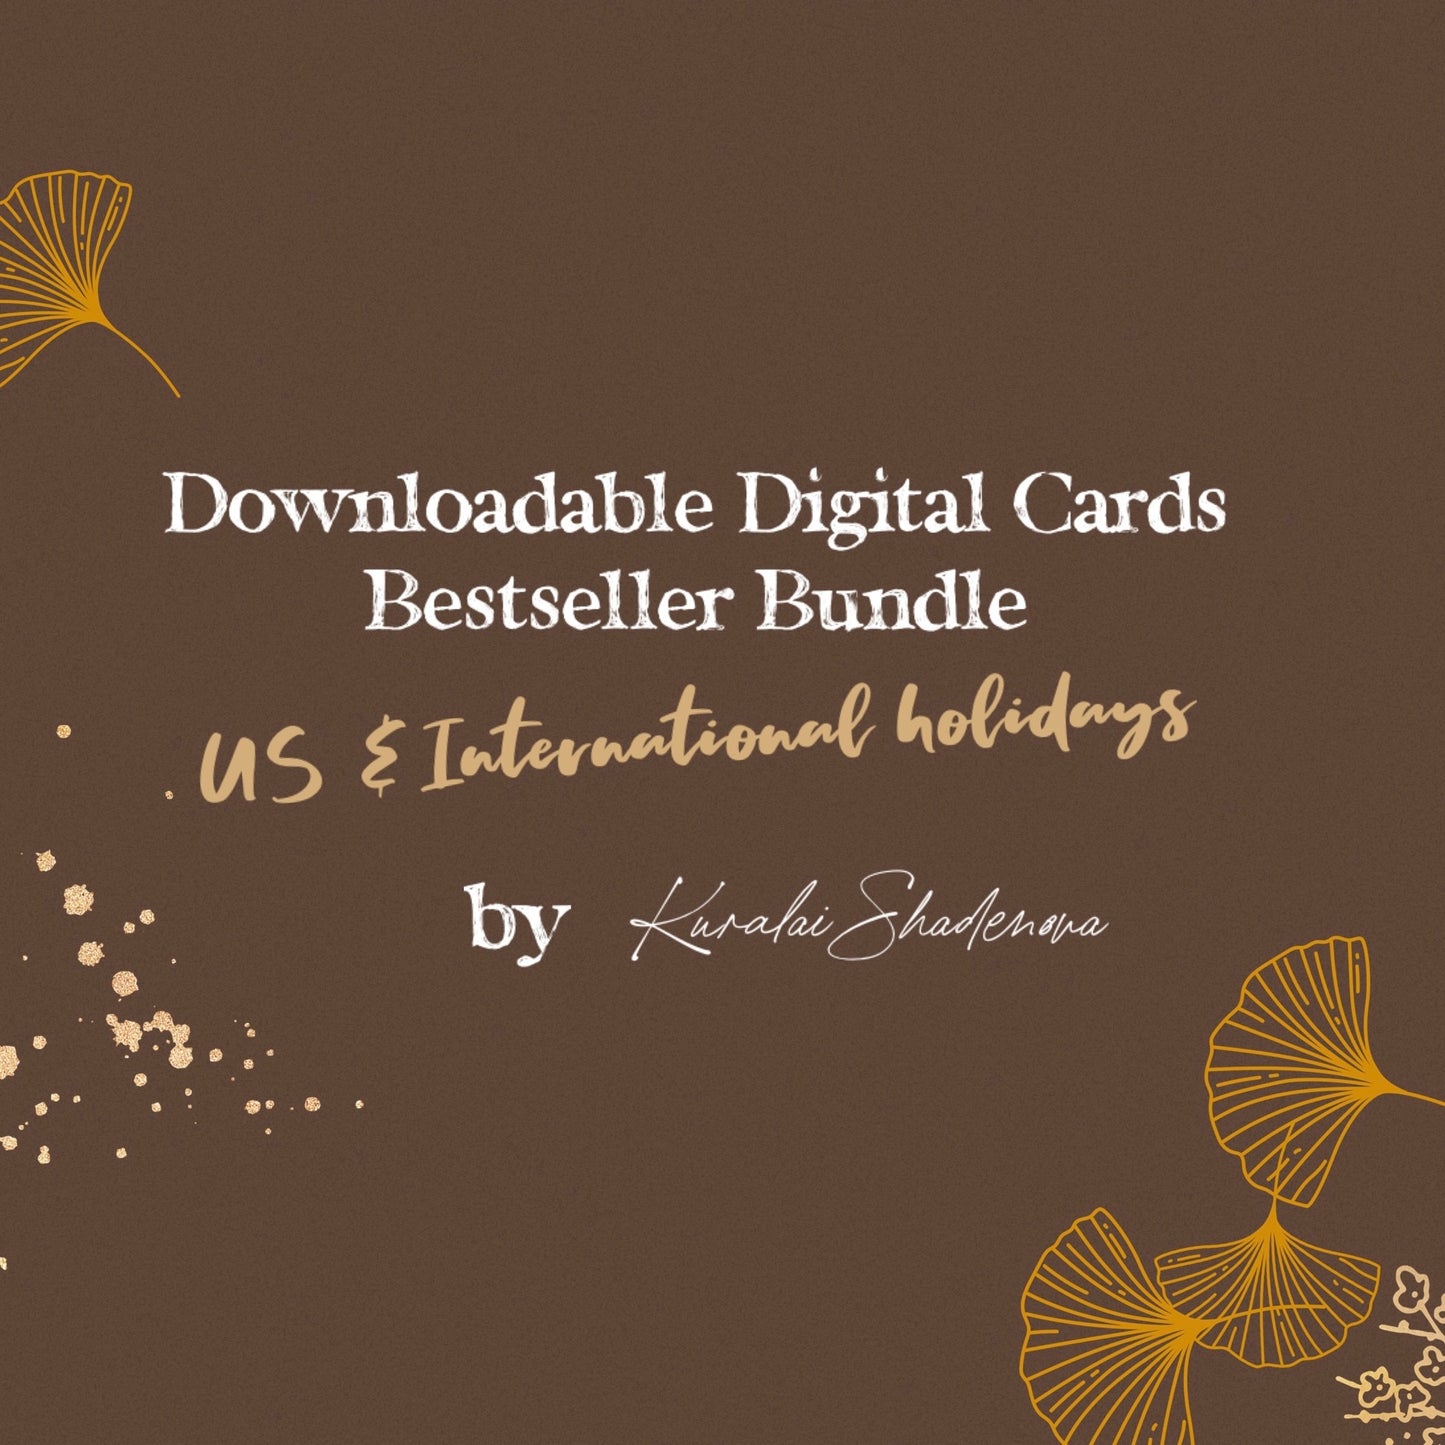 Downloadable Digital Cards Bestseller Bundle for US and International Holidays